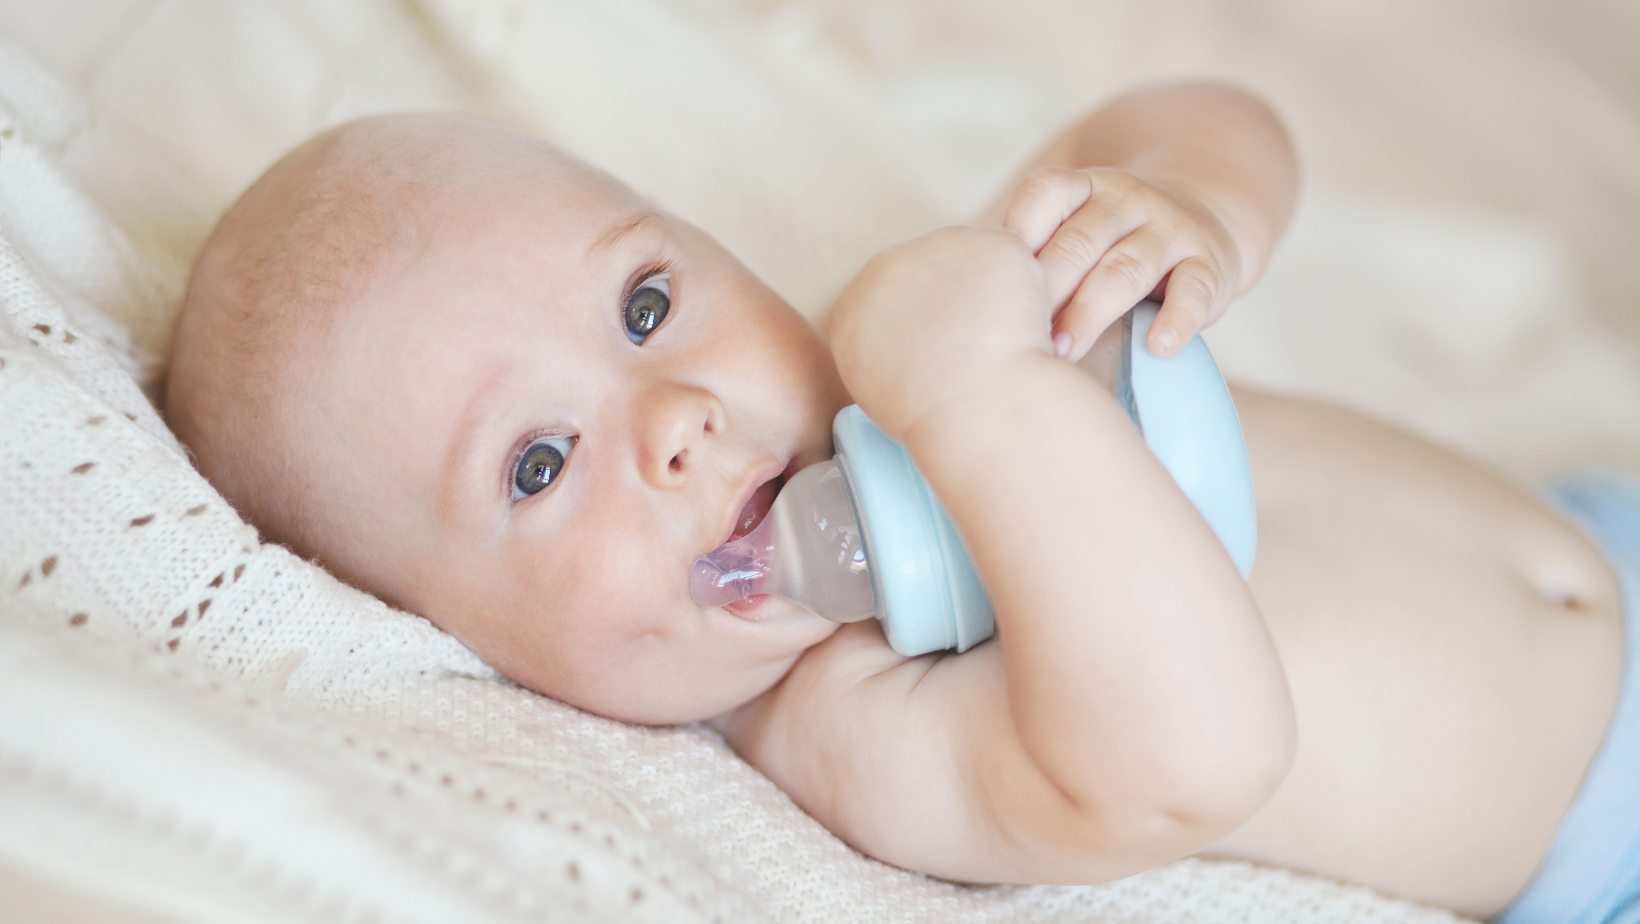 Zmnajšanje pogostega prebujanja pri dojenčkih in otrocih